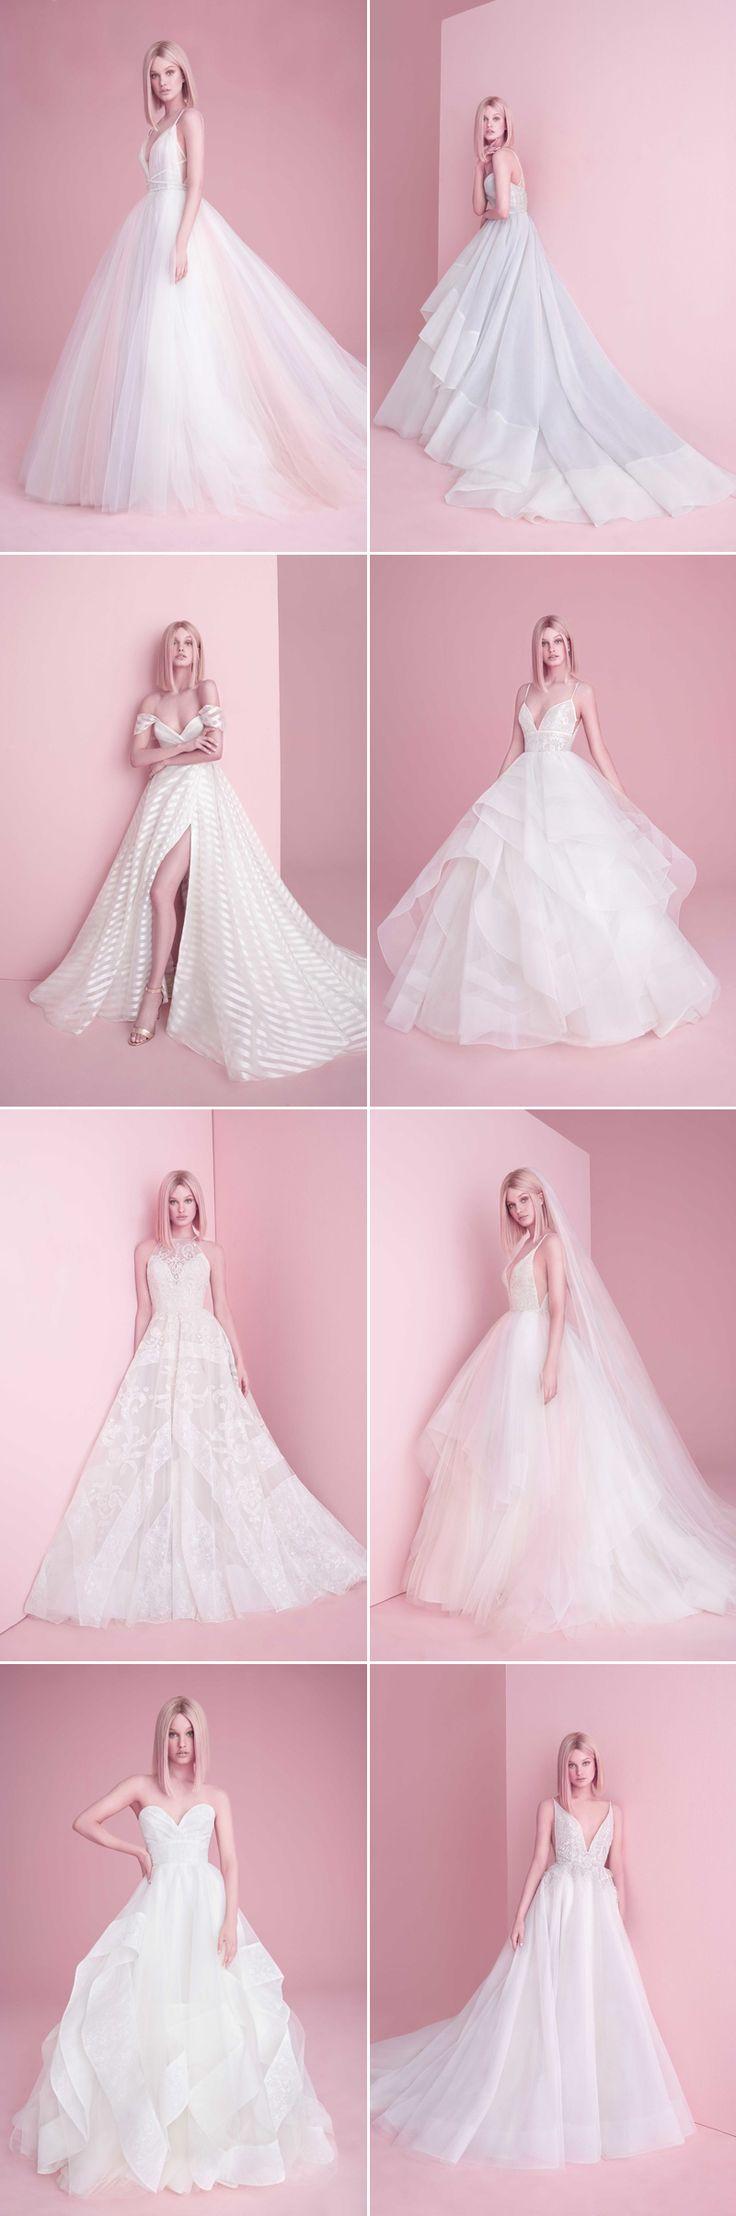 زفاف - Meet The New 2019 Wedding Dresses You'll Soon Fall In Love With!